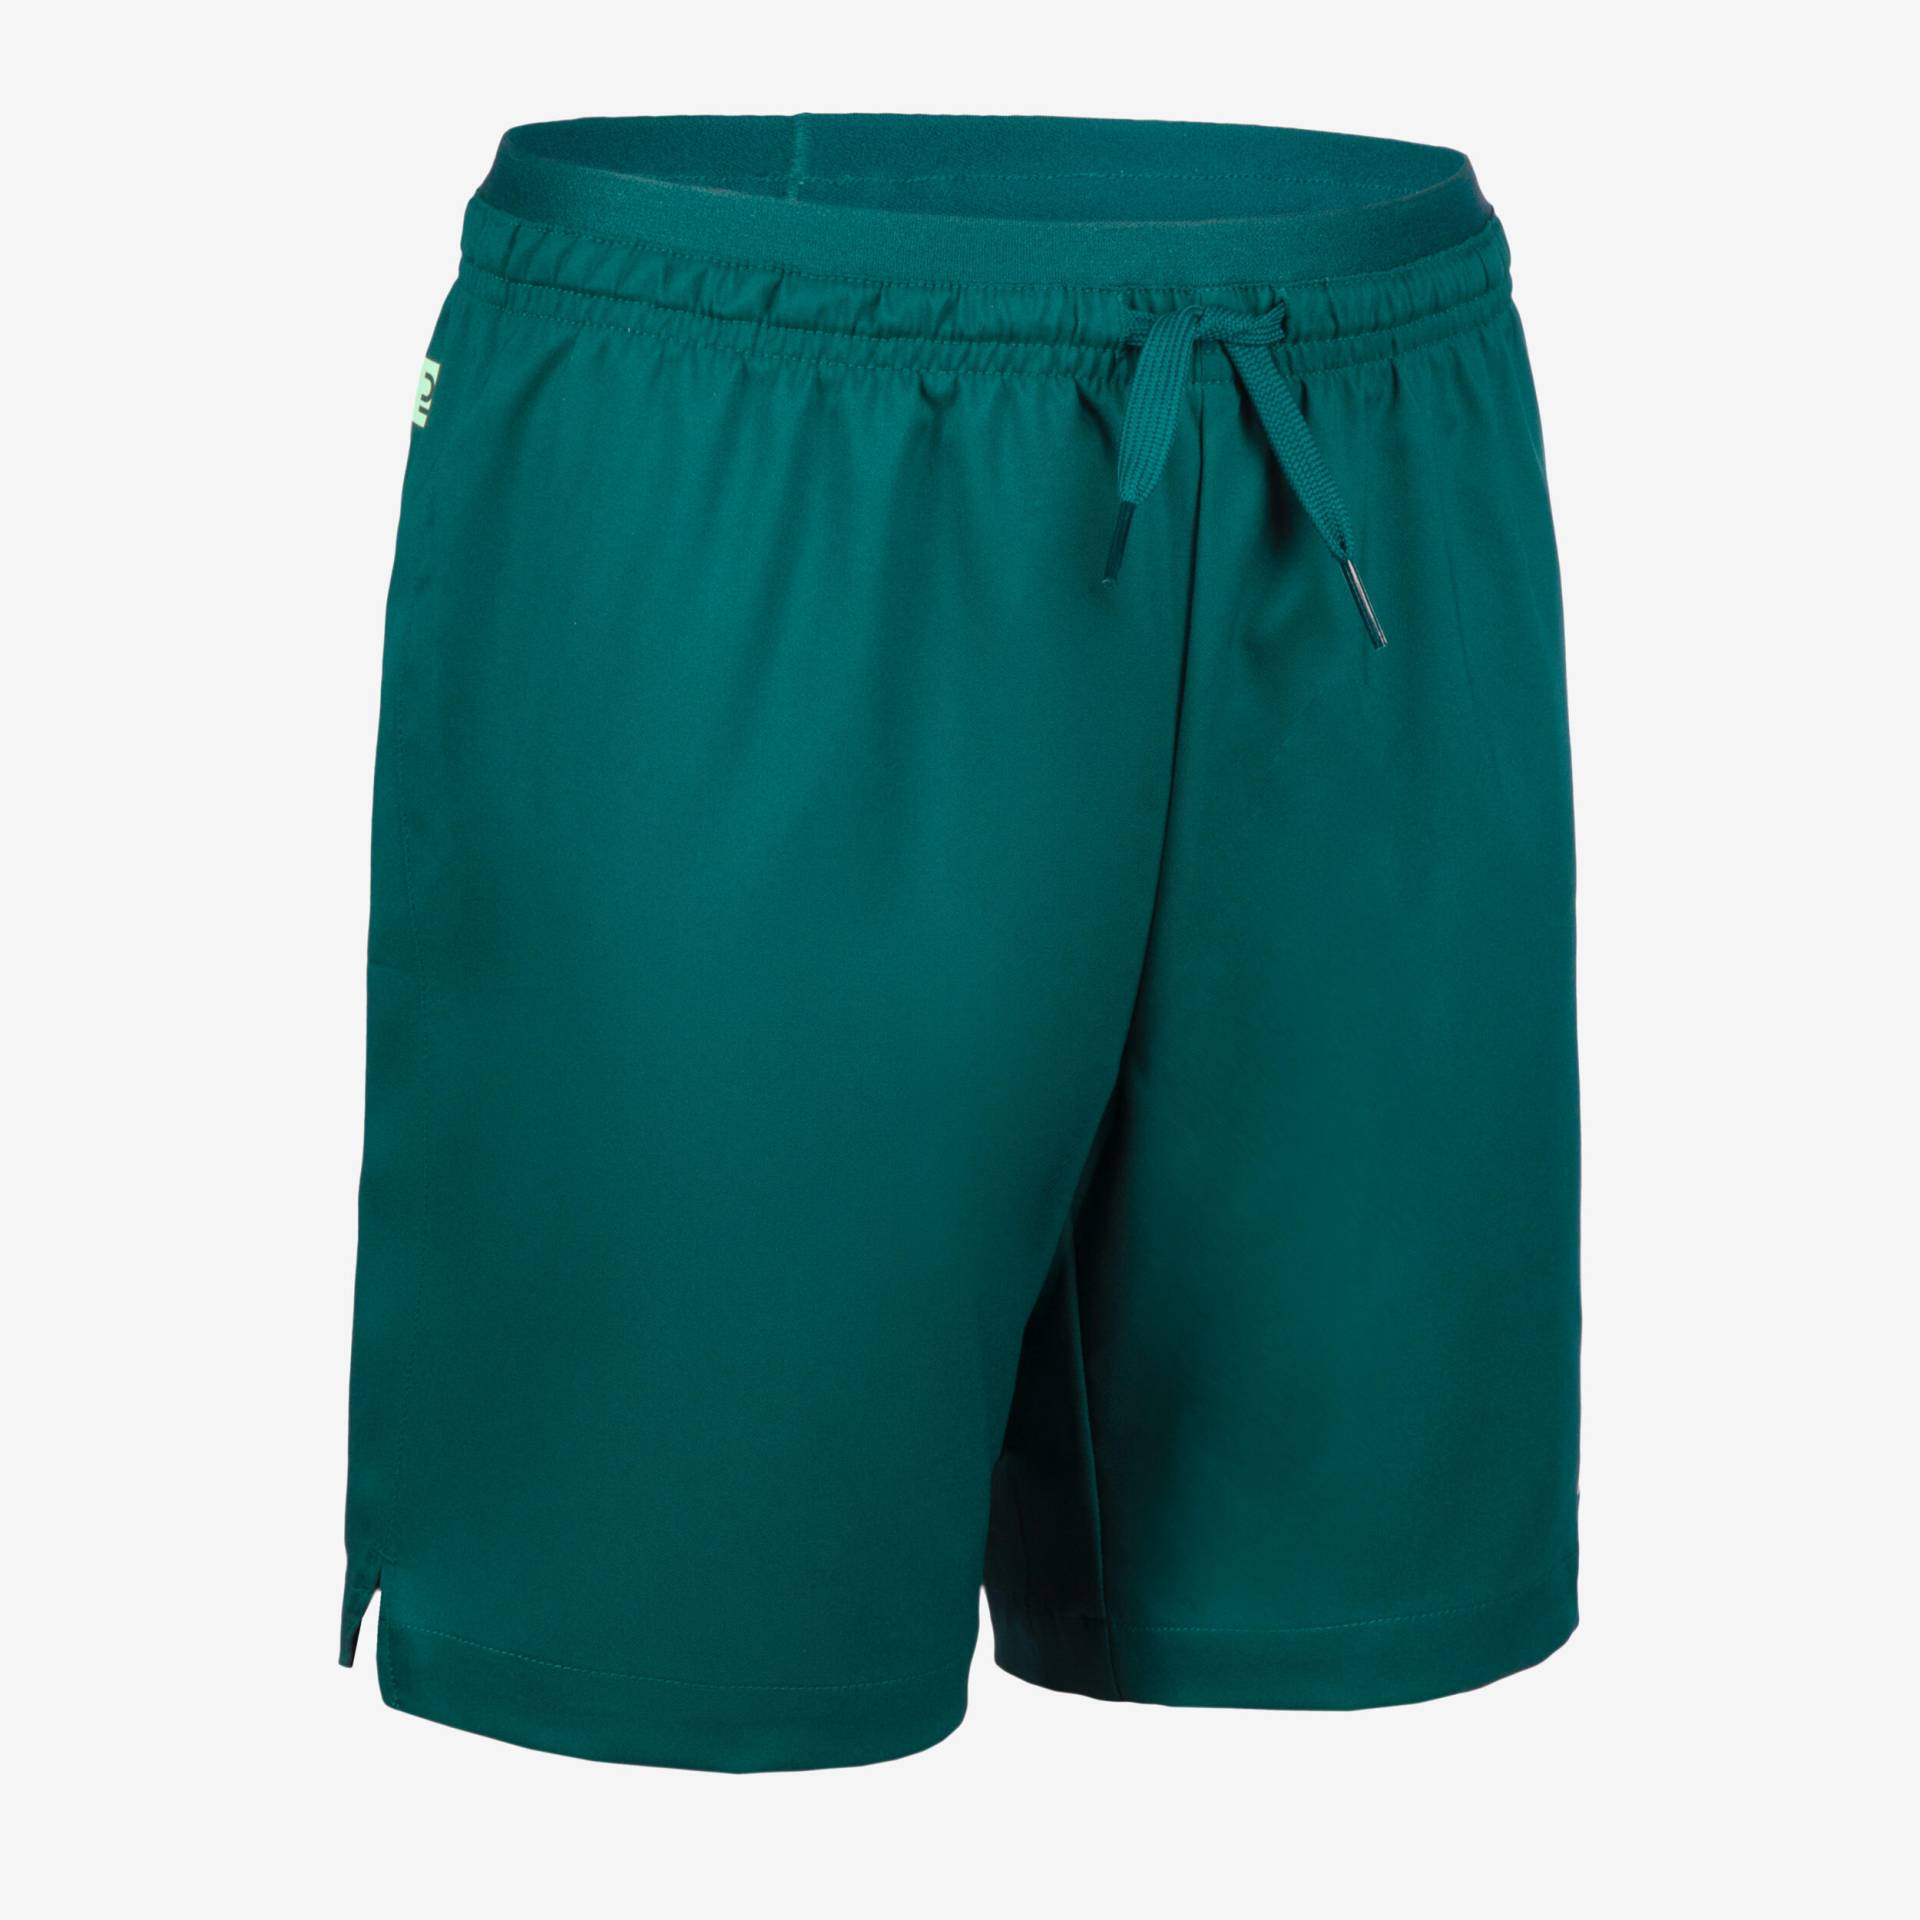 Mädchen Fussball Shorts - VIRALTO grün von KIPSTA